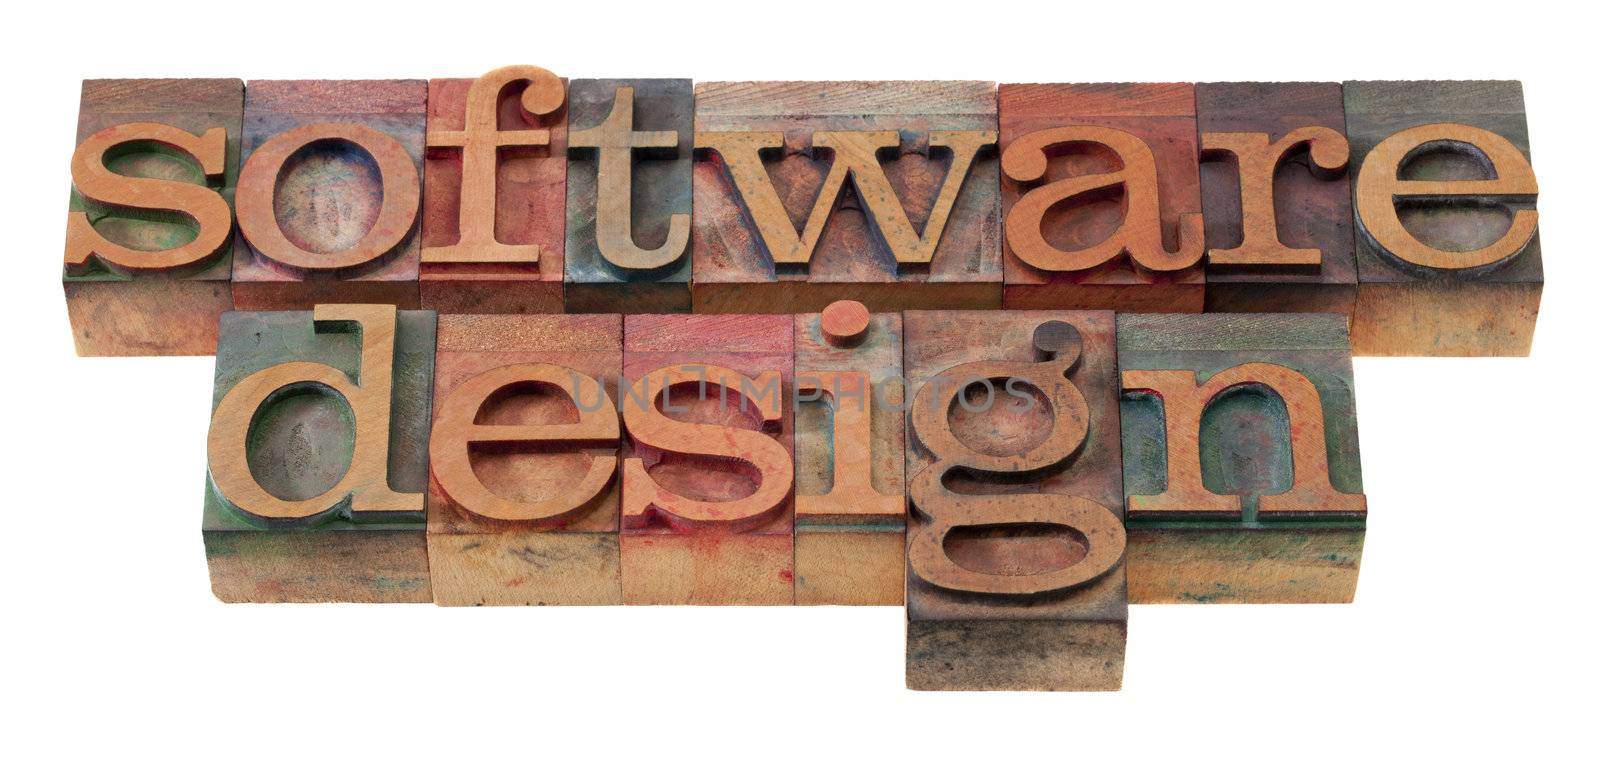 software design in letterpress type by PixelsAway